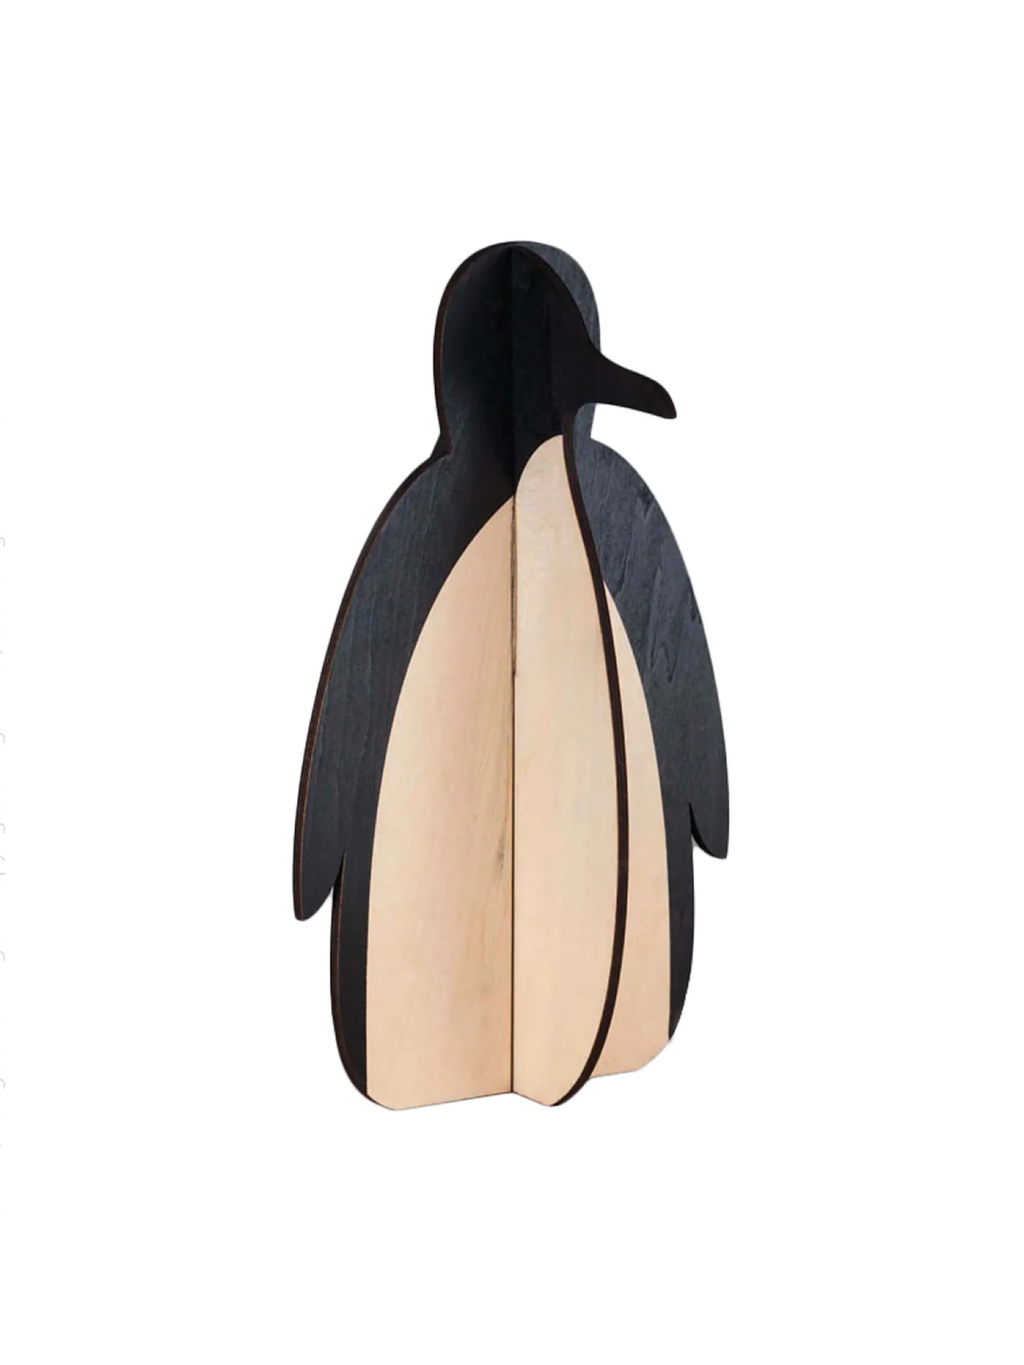 Tux Wood Penguins